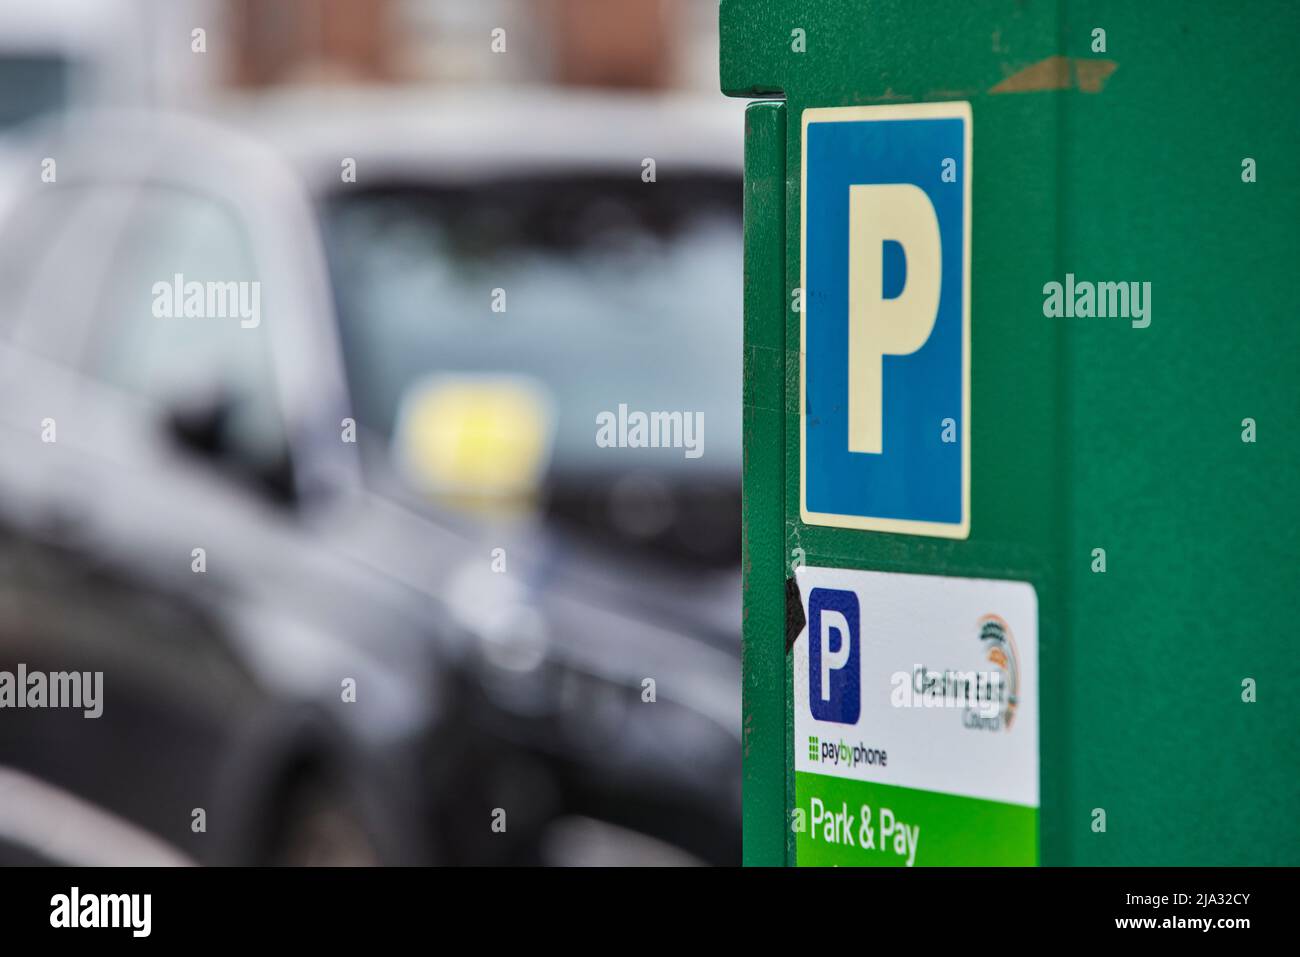 Compteur de stationnement Cheshire East dans un parking de Macclesfield avec un billet de stationnement émis pour une voiture garée Banque D'Images